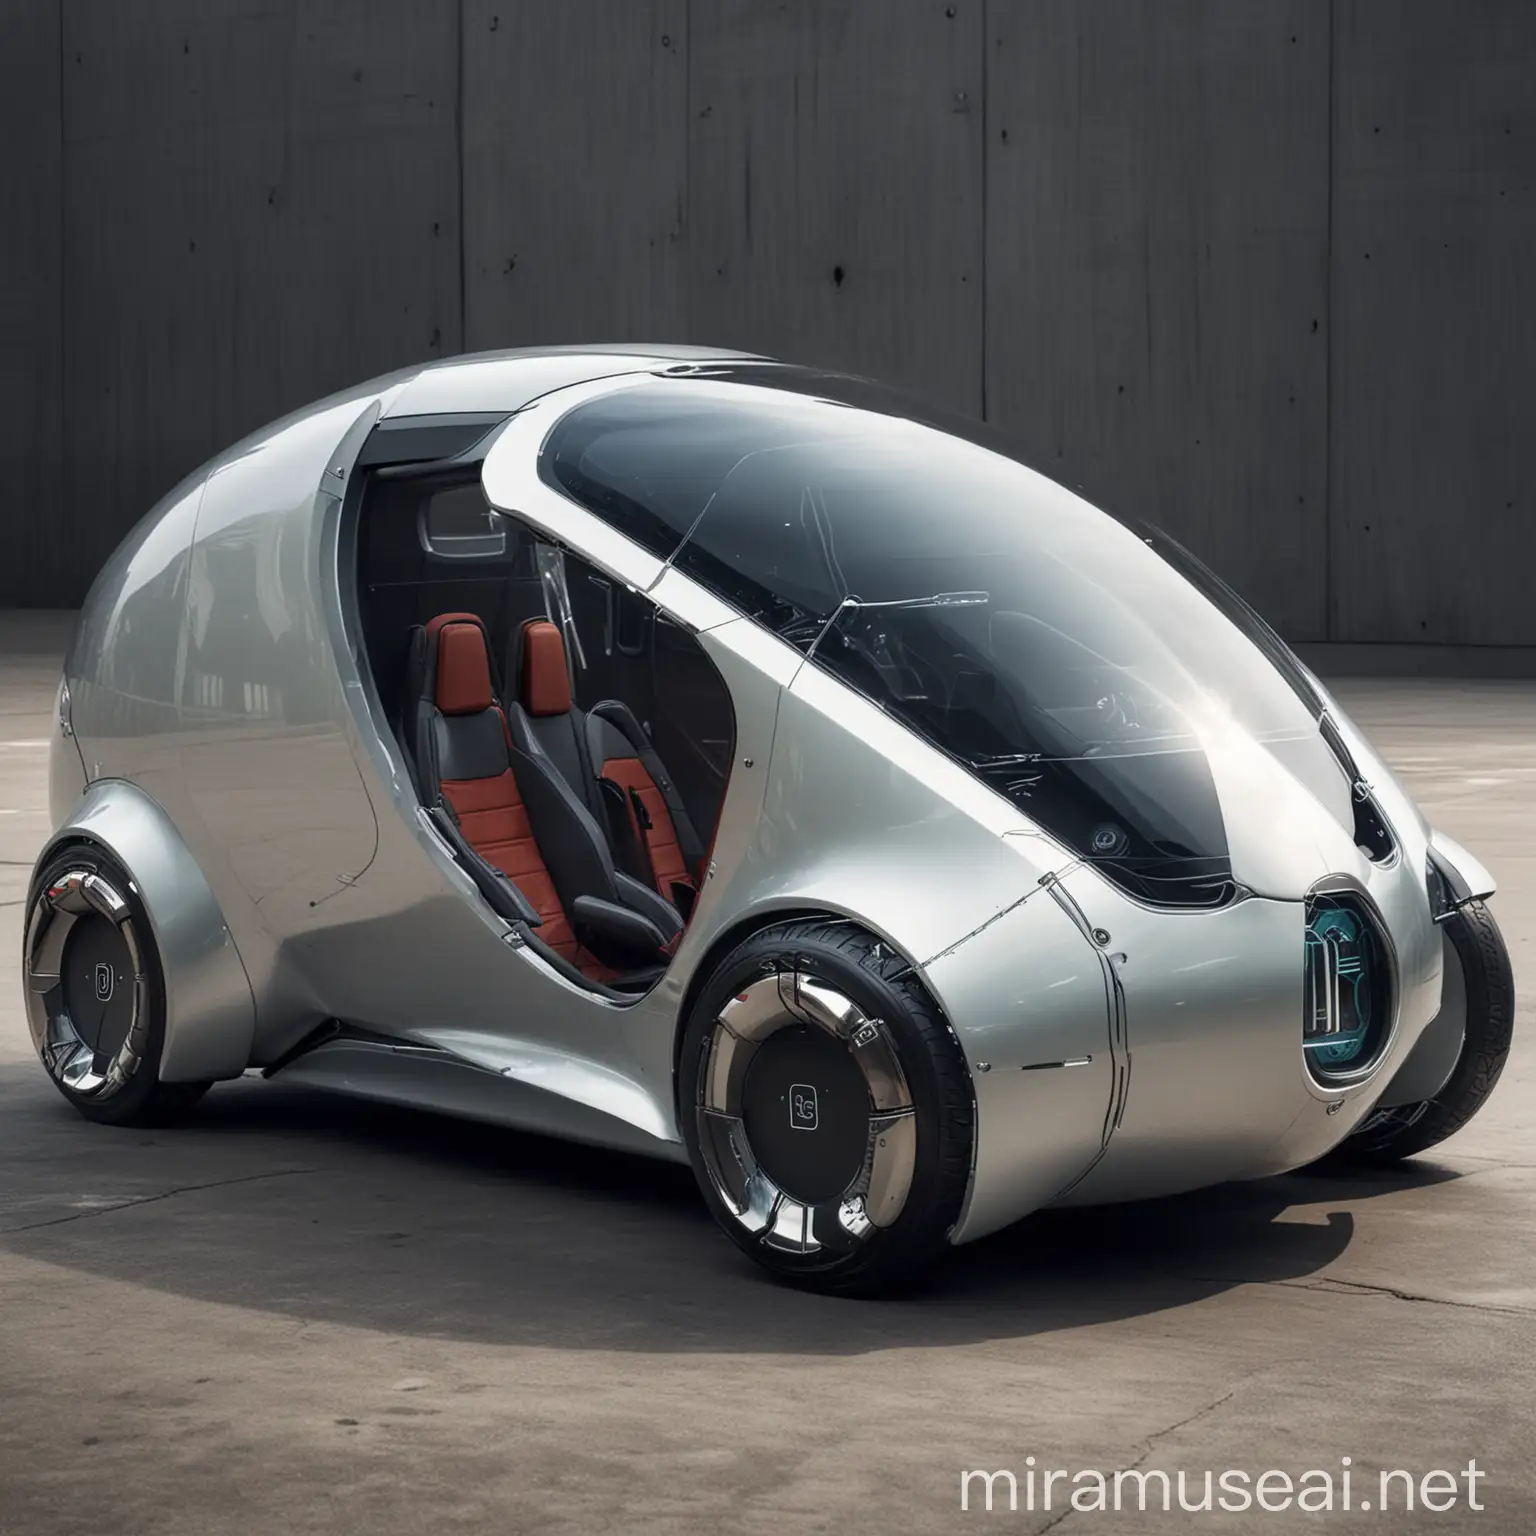 A capsule formed futuristic car